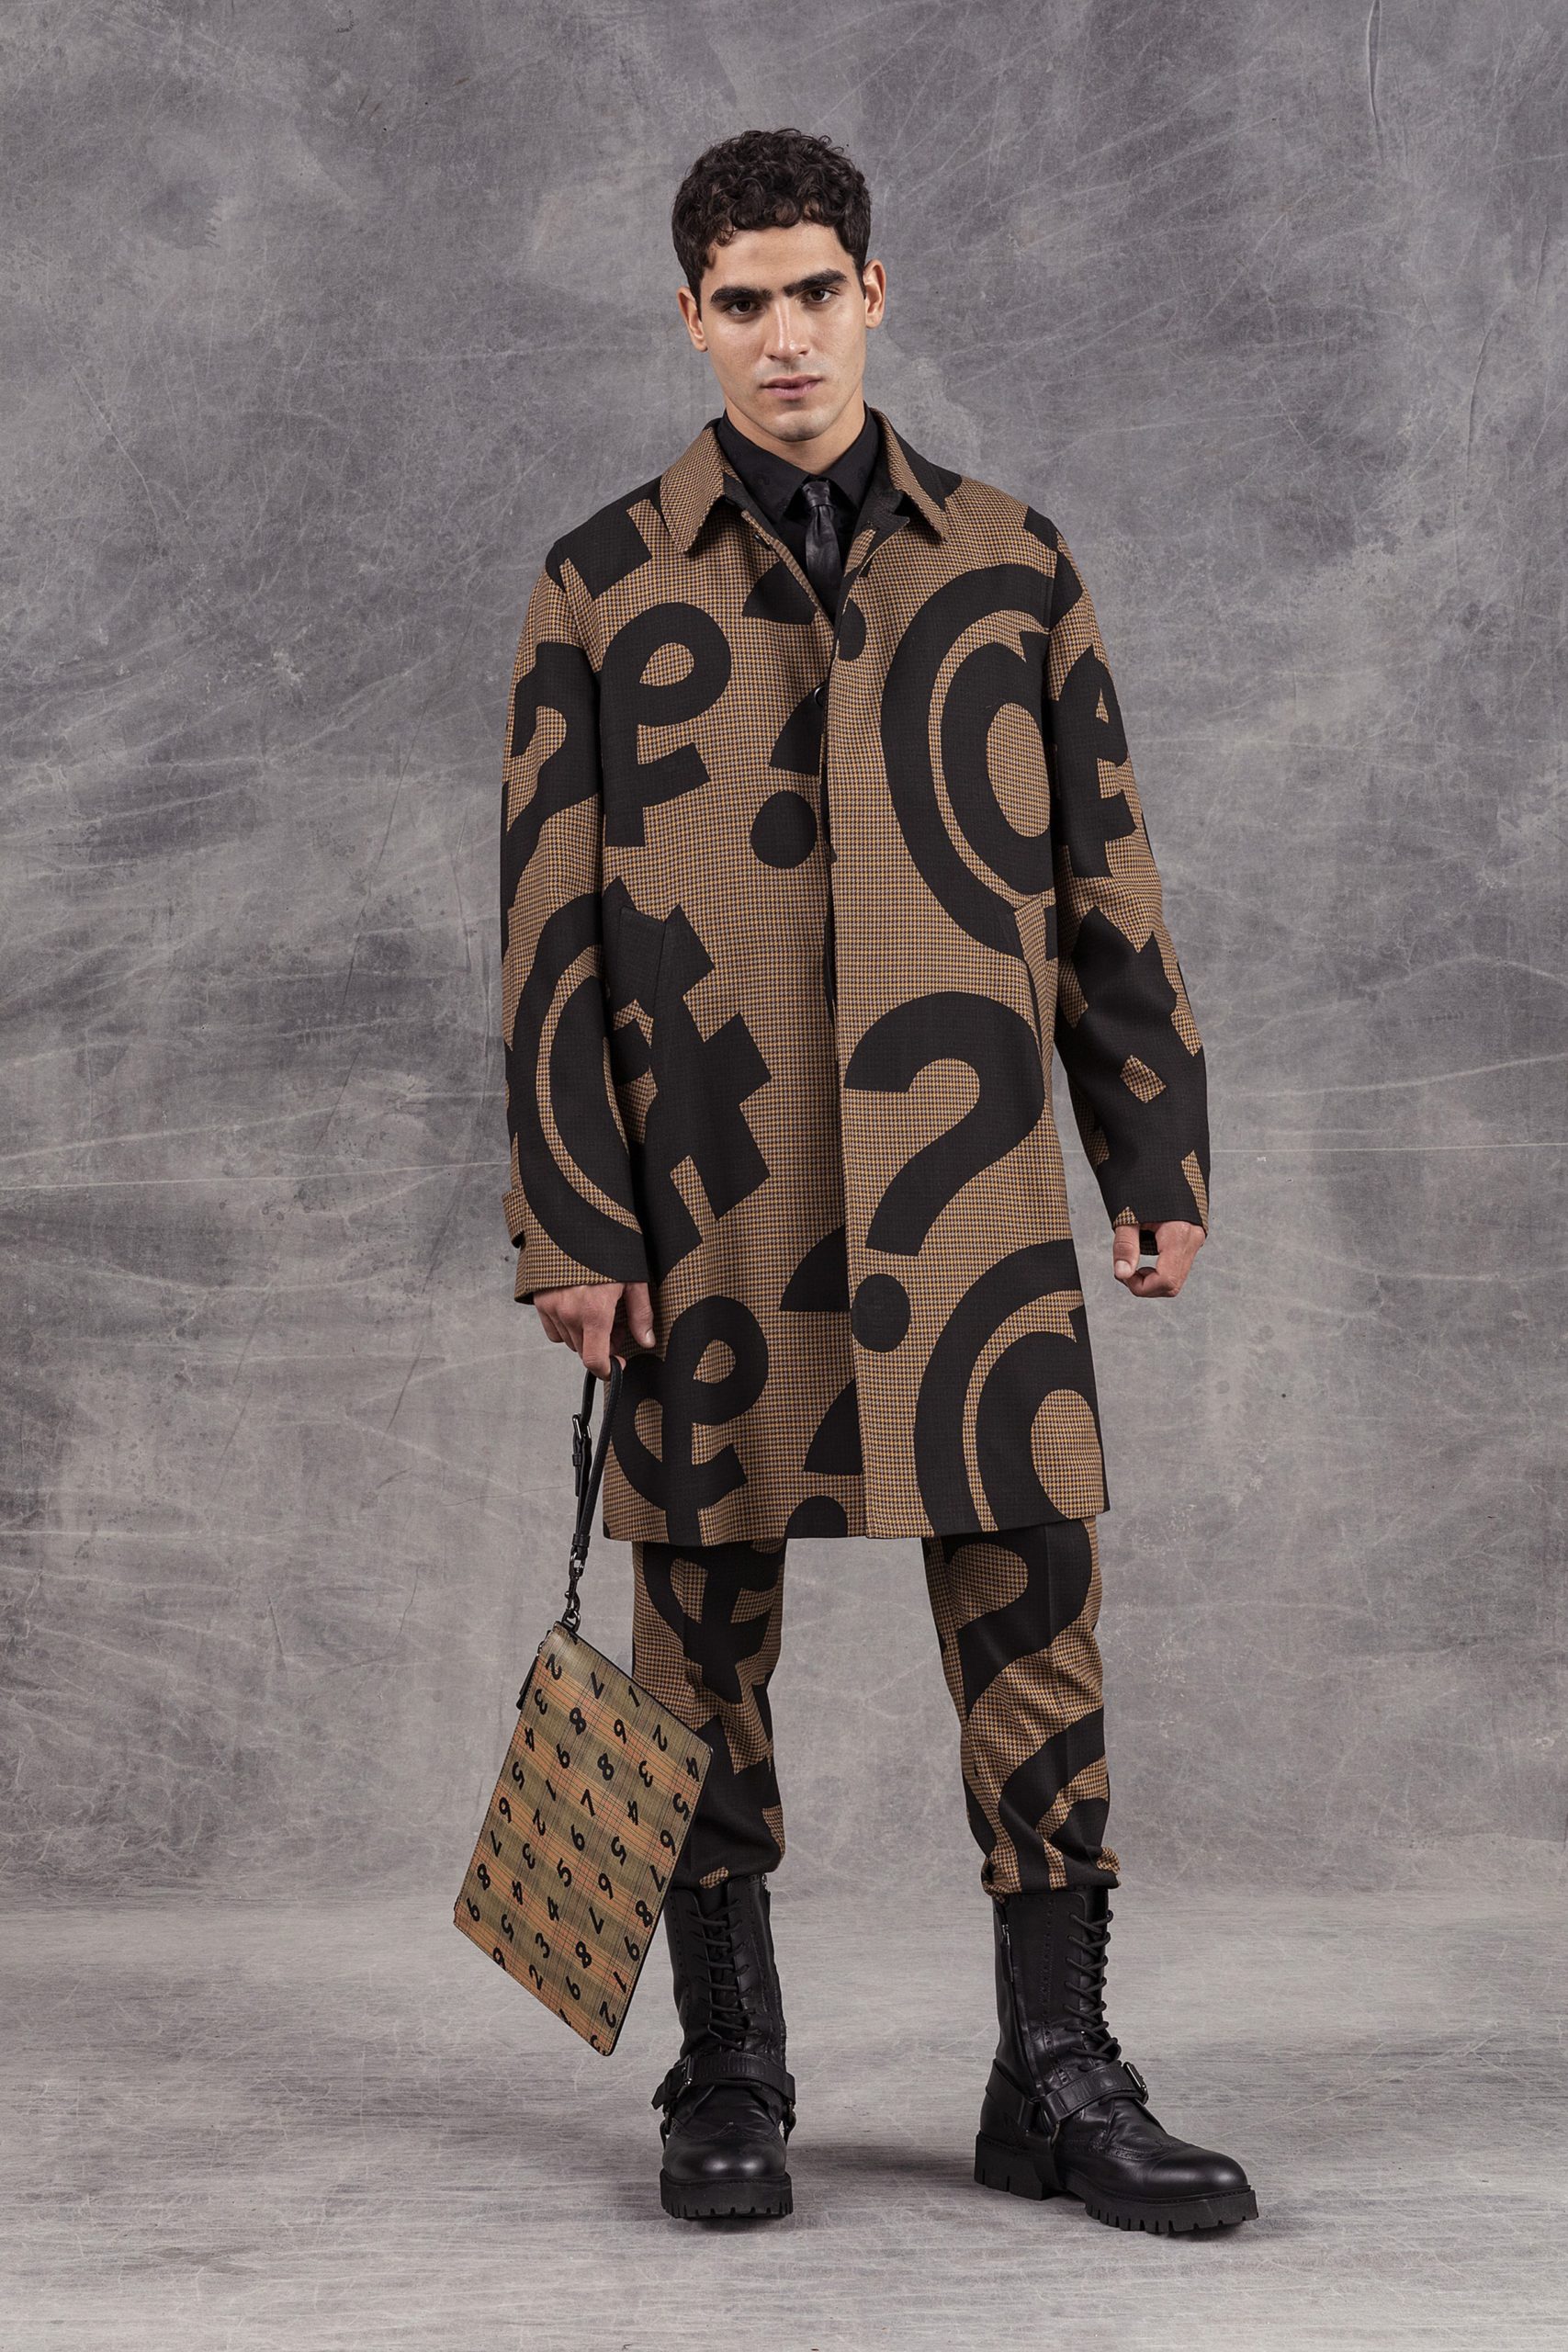 Деним, пиджаки и необычные принты: новая мужская коллекция Moschino 